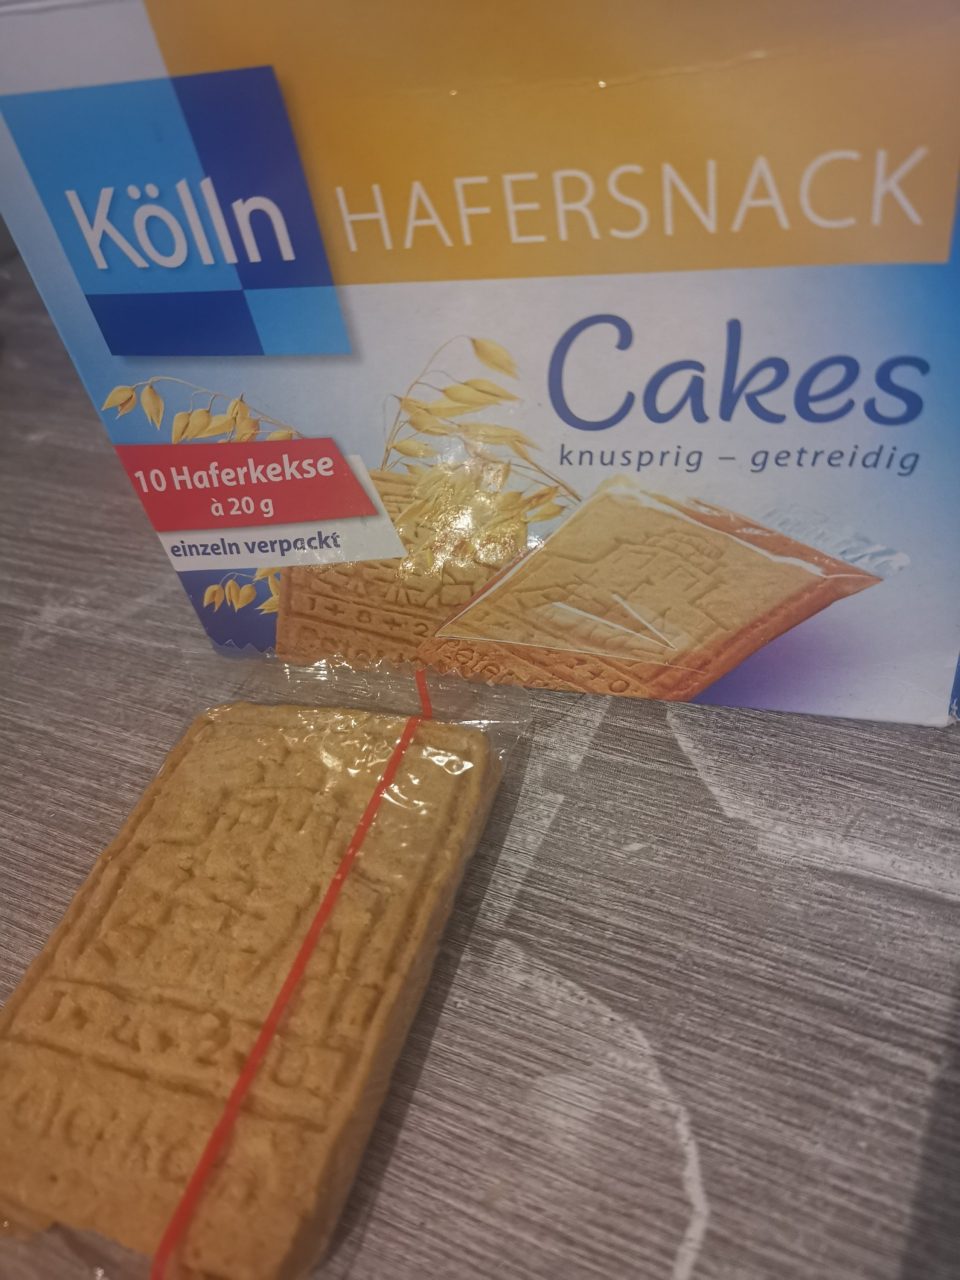 Kölln Hafersnack Cakes Franken Bloggertreffen Teil 6 2